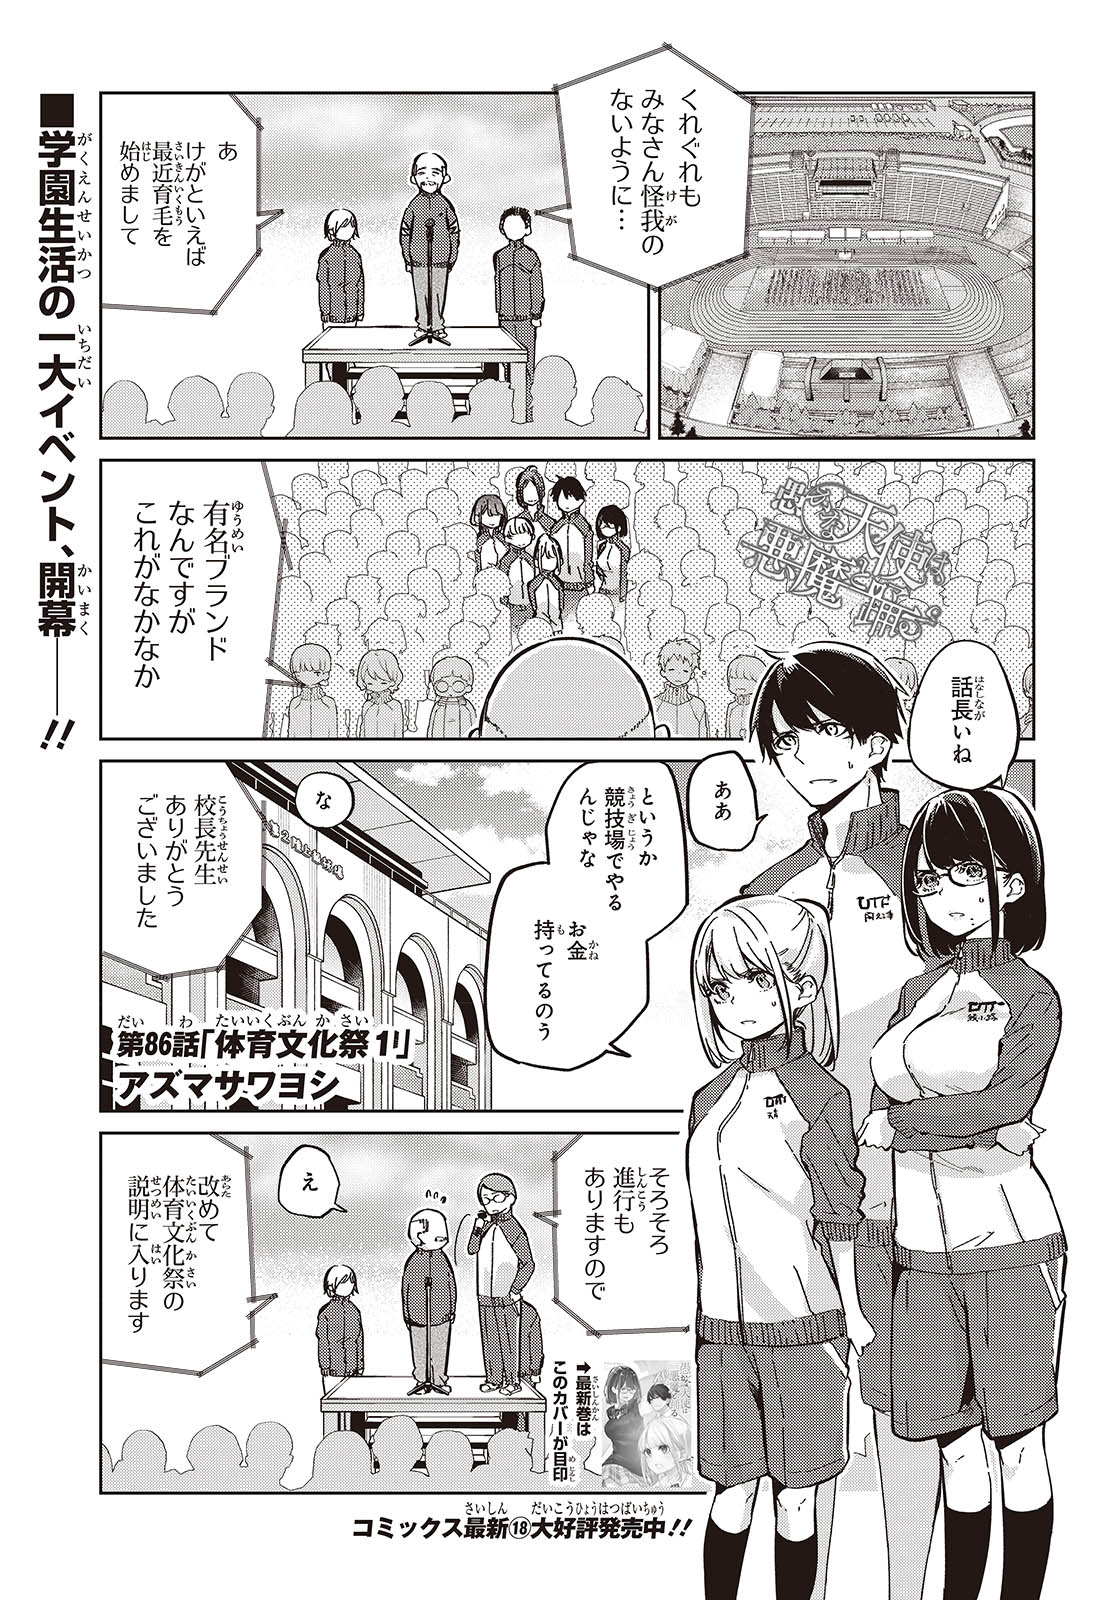 Oroka na Tenshi wa Akuma to Odoru - Chapter 86 - Page 1